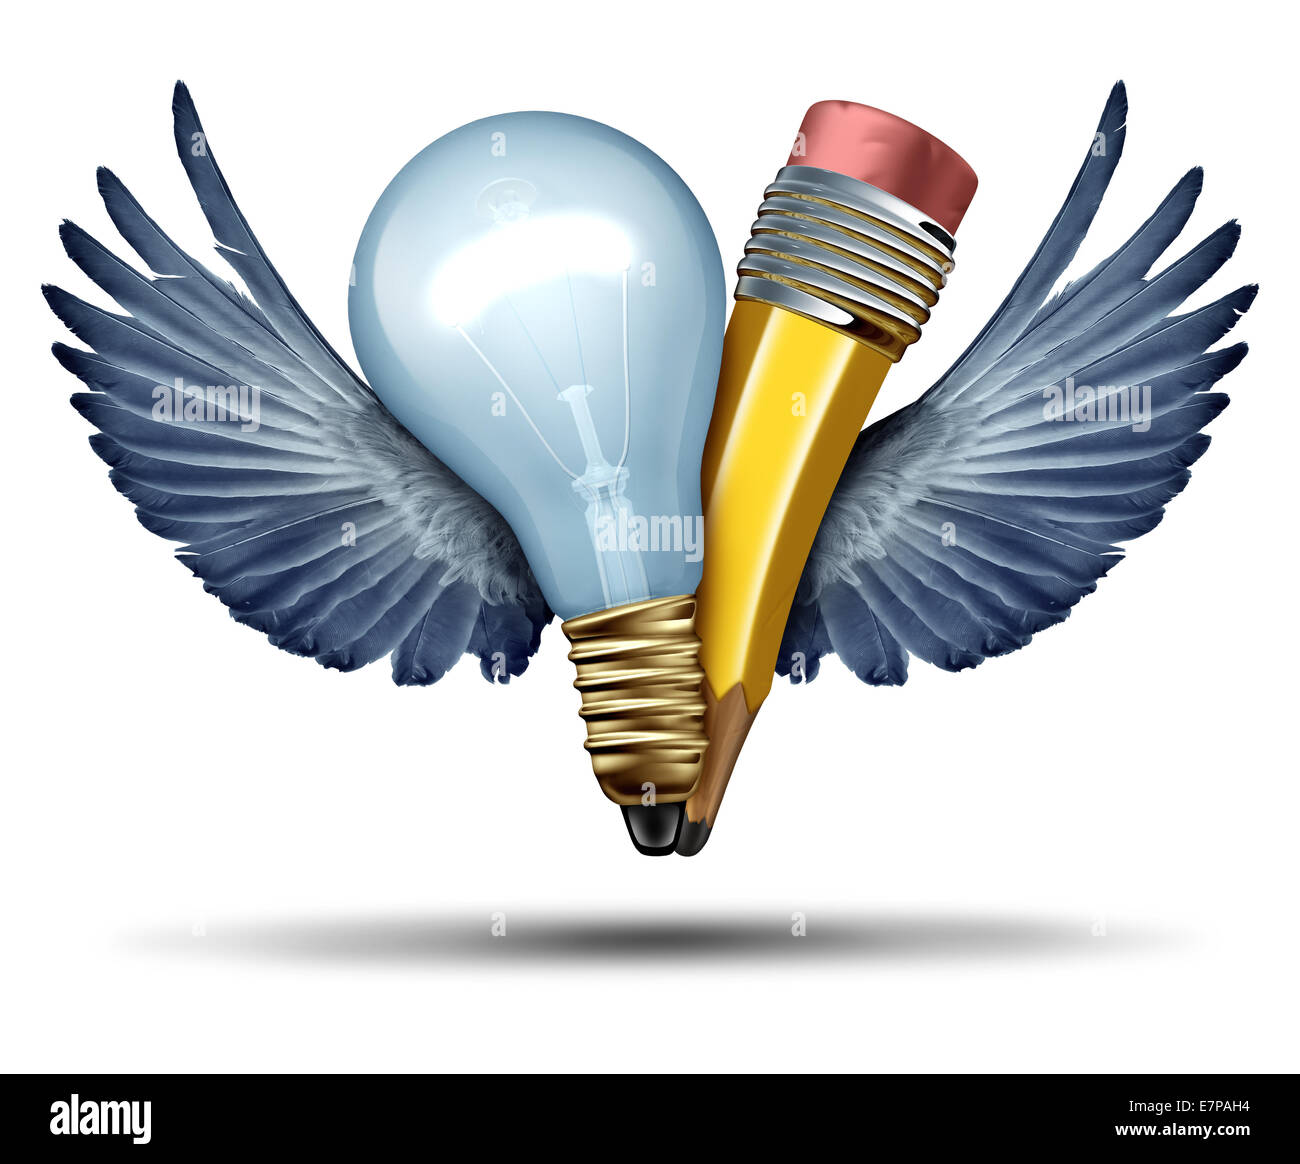 Kreativität-Freiheit-Konzept als eine Glühbirne und Bleistift in einem Gemeinschaftswerk fliegenden, mit Flügel als Metapher und strategische Symbol für kreative Partnerschaft Zusammenarbeit als ein Geschäft Führung Erfolg Symbol für die Kooperation in Zusammenarbeit. Stockfoto